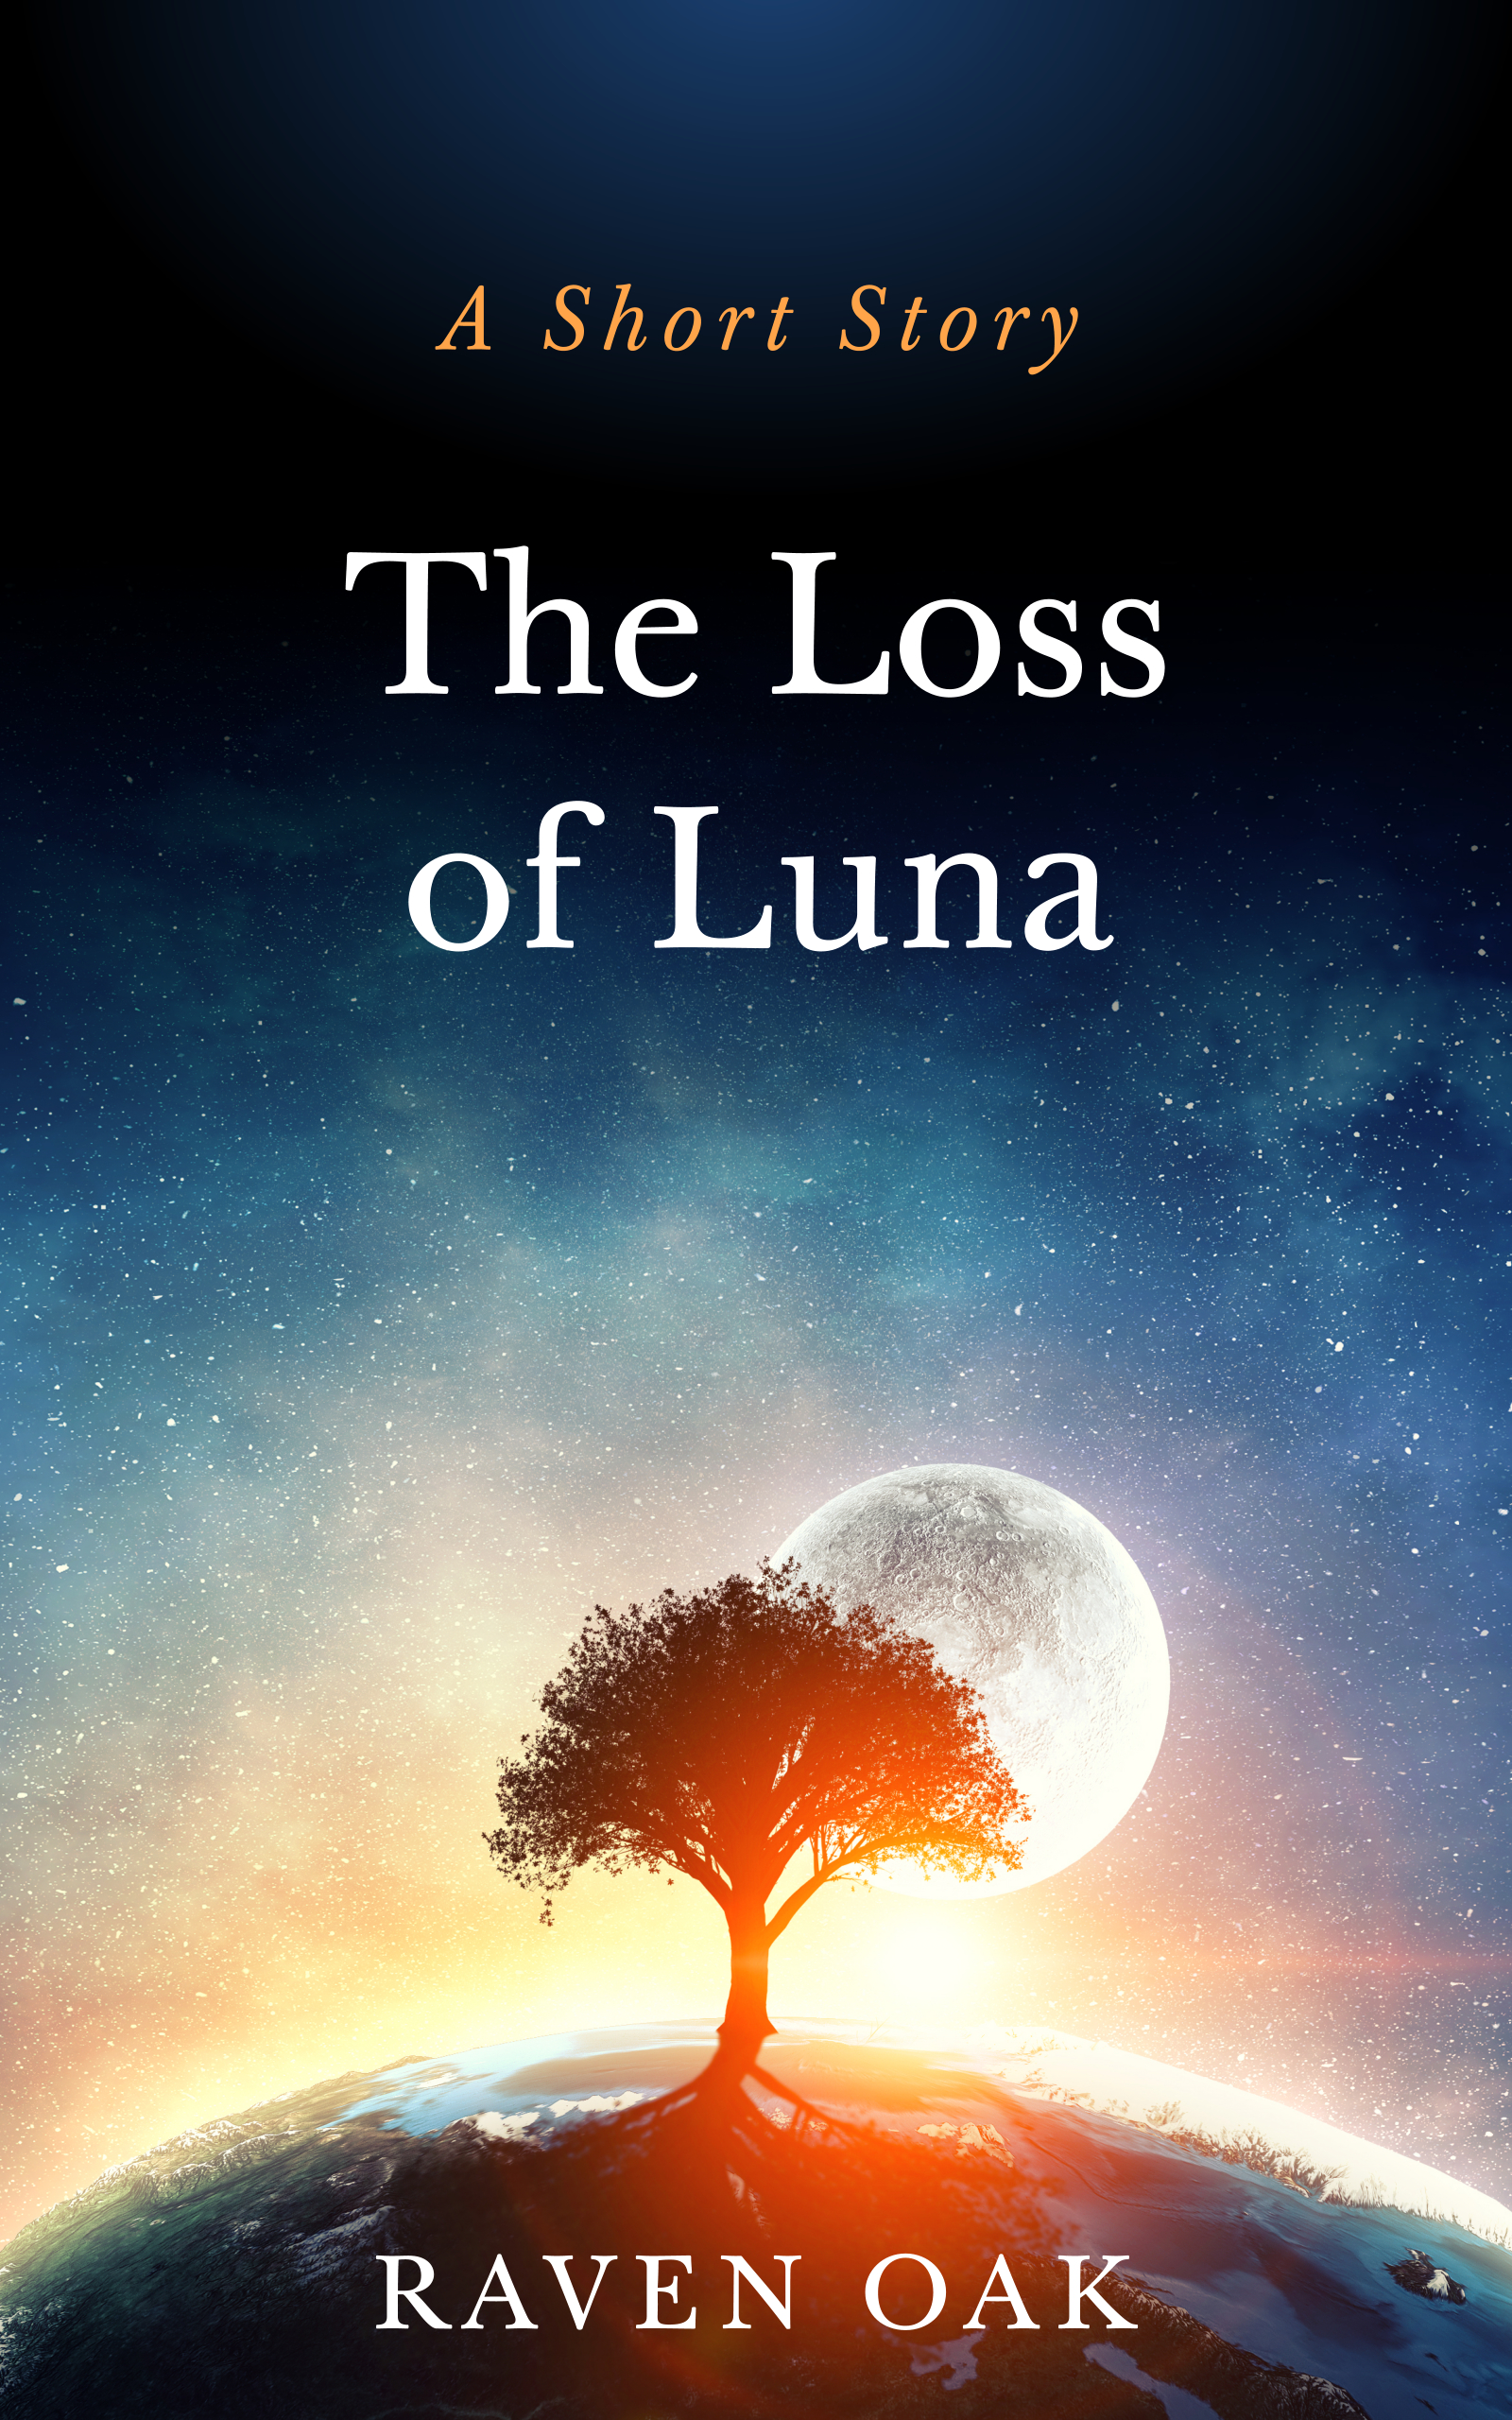 The Loss of Luna by Raven Oak